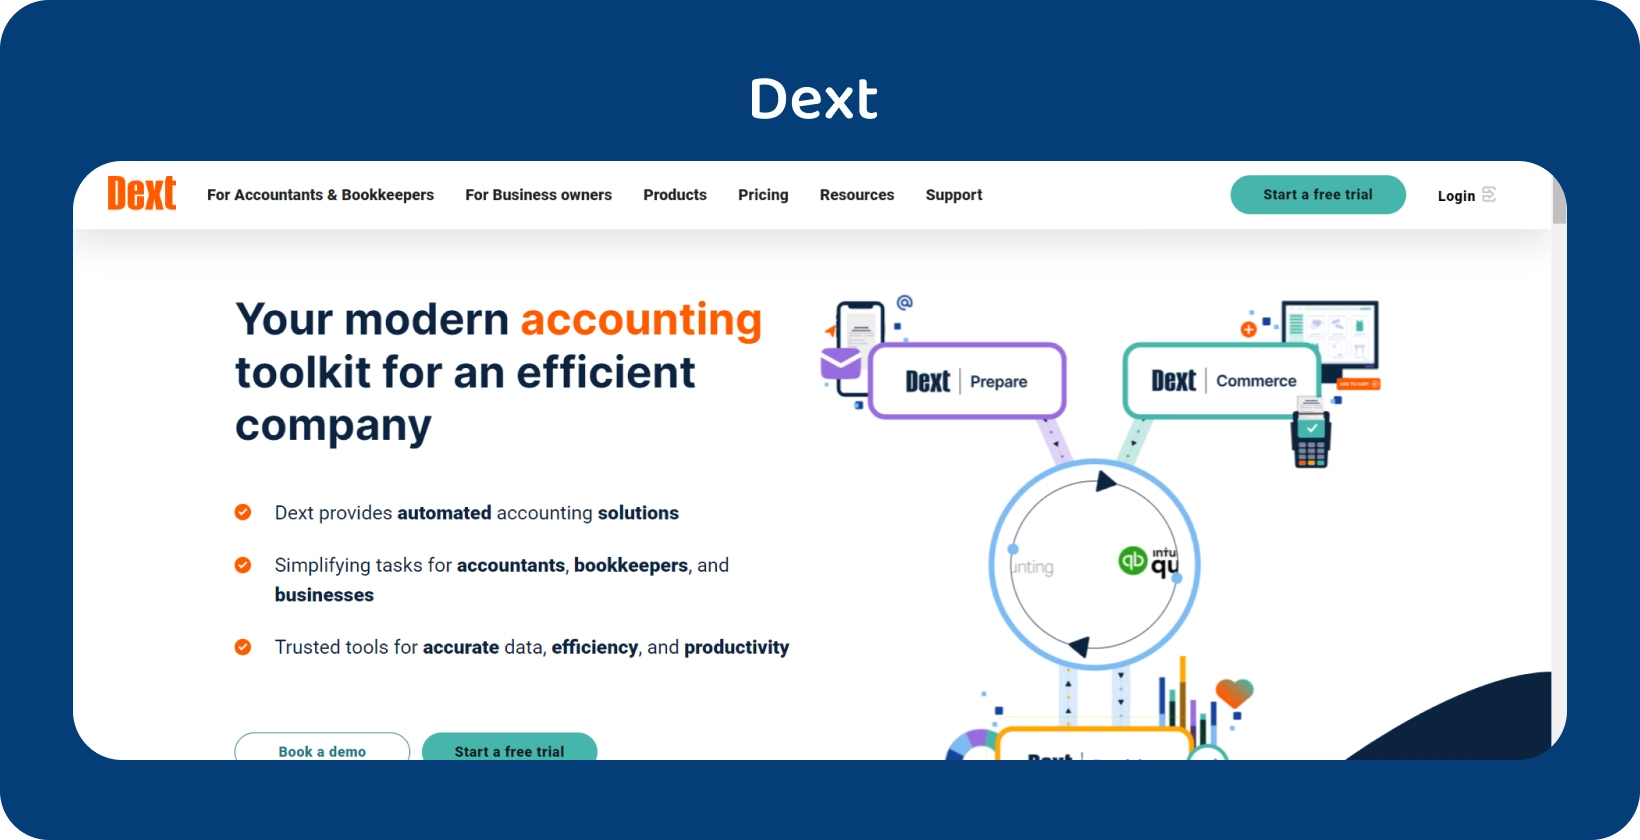 L'interfaccia all'avanguardia del toolkit di contabilità di Dext mette in evidenza l'automazione per i professionisti della contabilità e della contabilità.